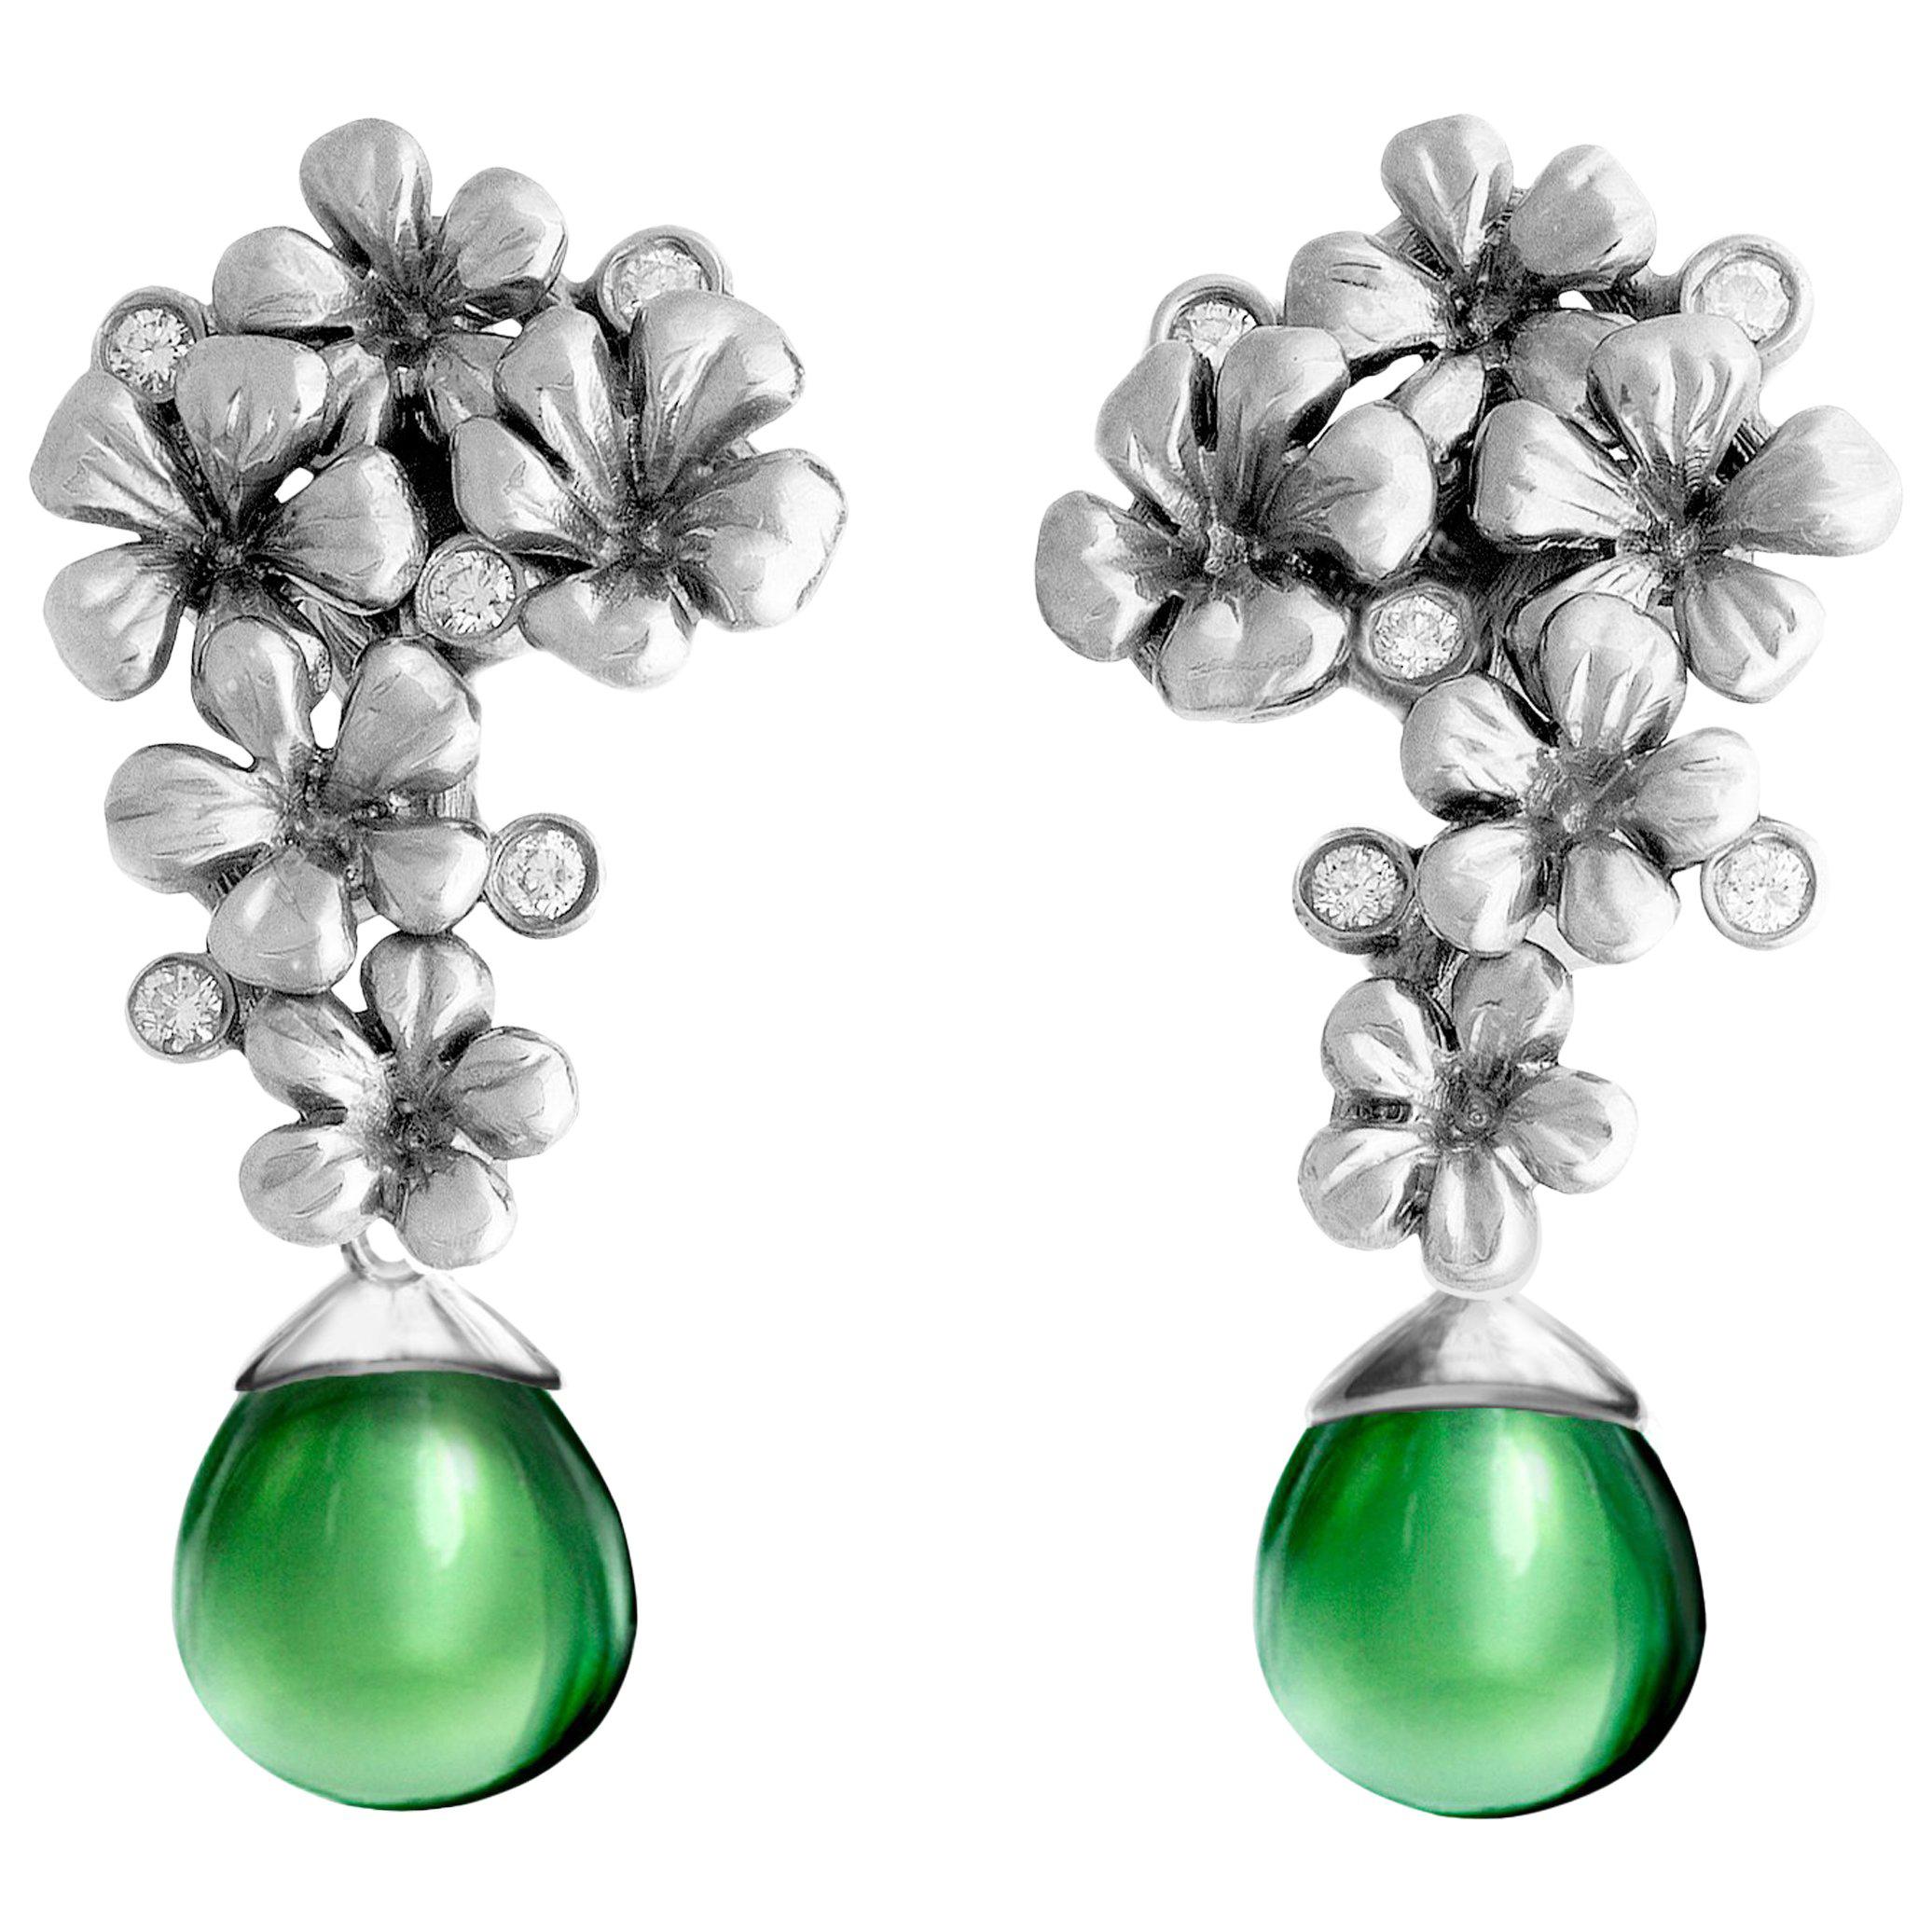 Plum Blossom Contemporary Designer Earrings Diamonds in 14 Kt White Gold